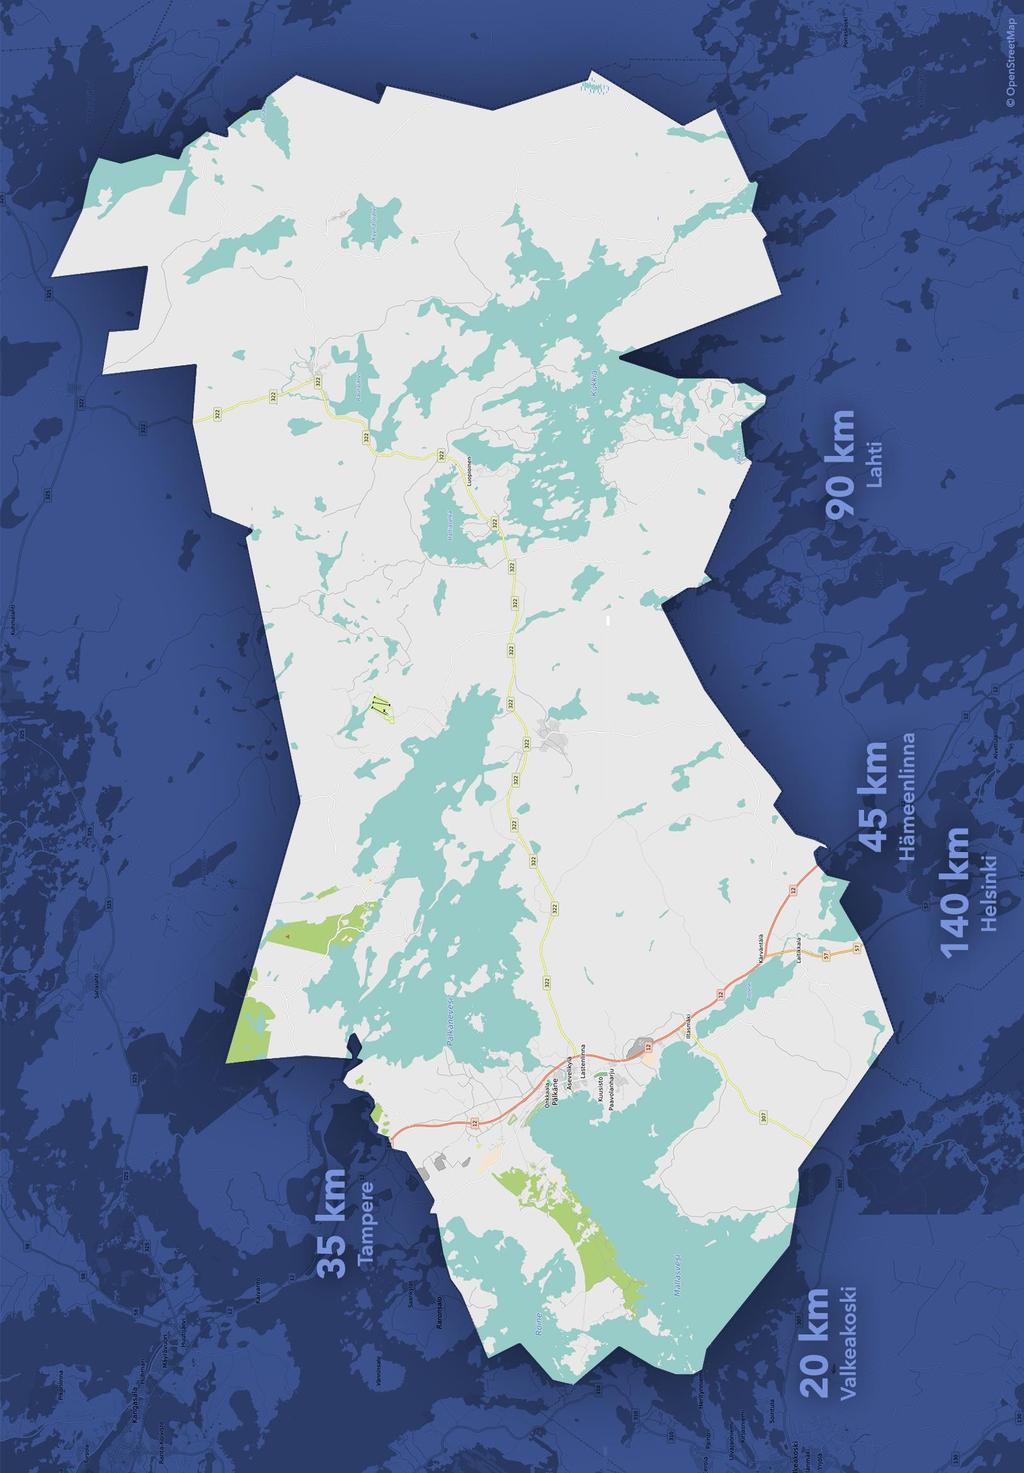 Pälkäne Asukasluku 6678 (2016) 4200 vapaa-ajan asuntoa Pinta-ala 740 km², josta maapinta-ala 560 km² Asukastiheys 12